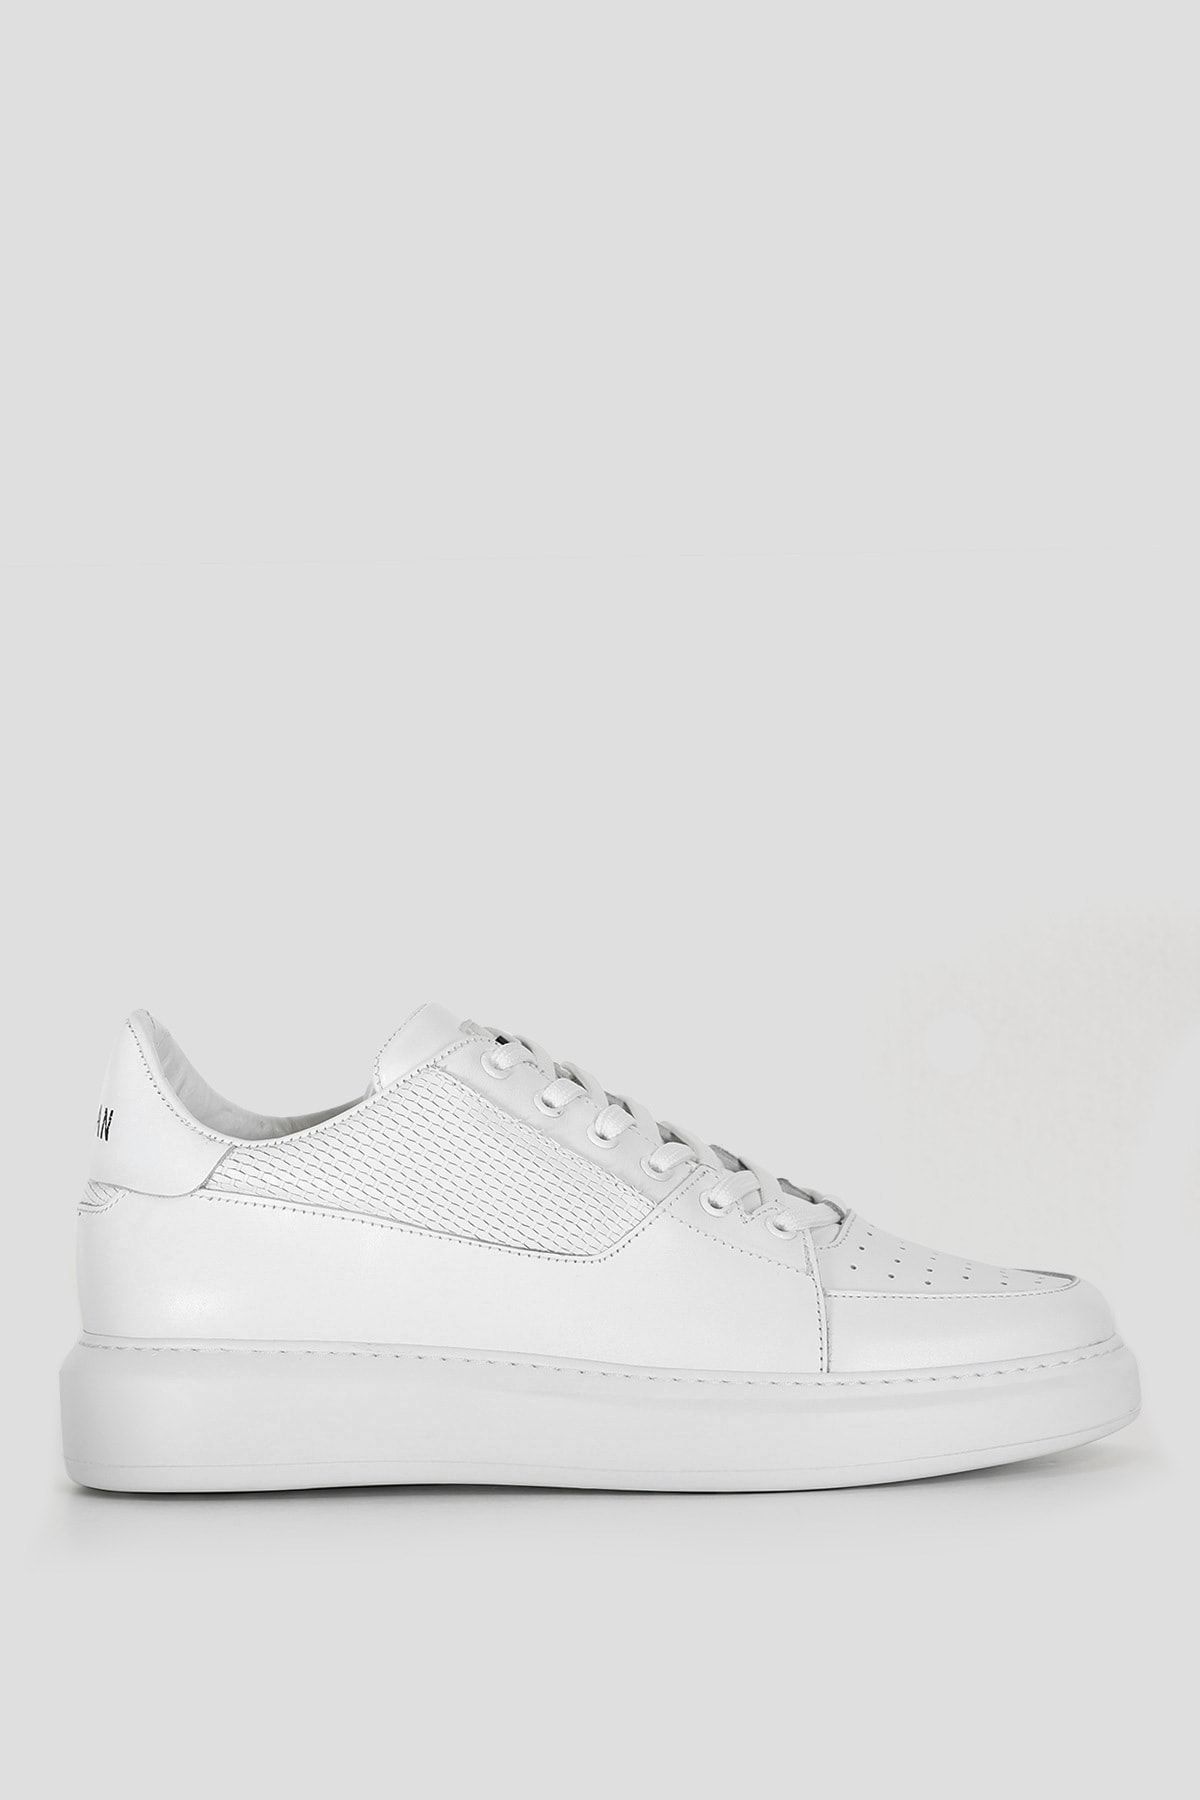 Lufian Perfetto Erkek Deri Sneaker Ayakkabı Beyaz